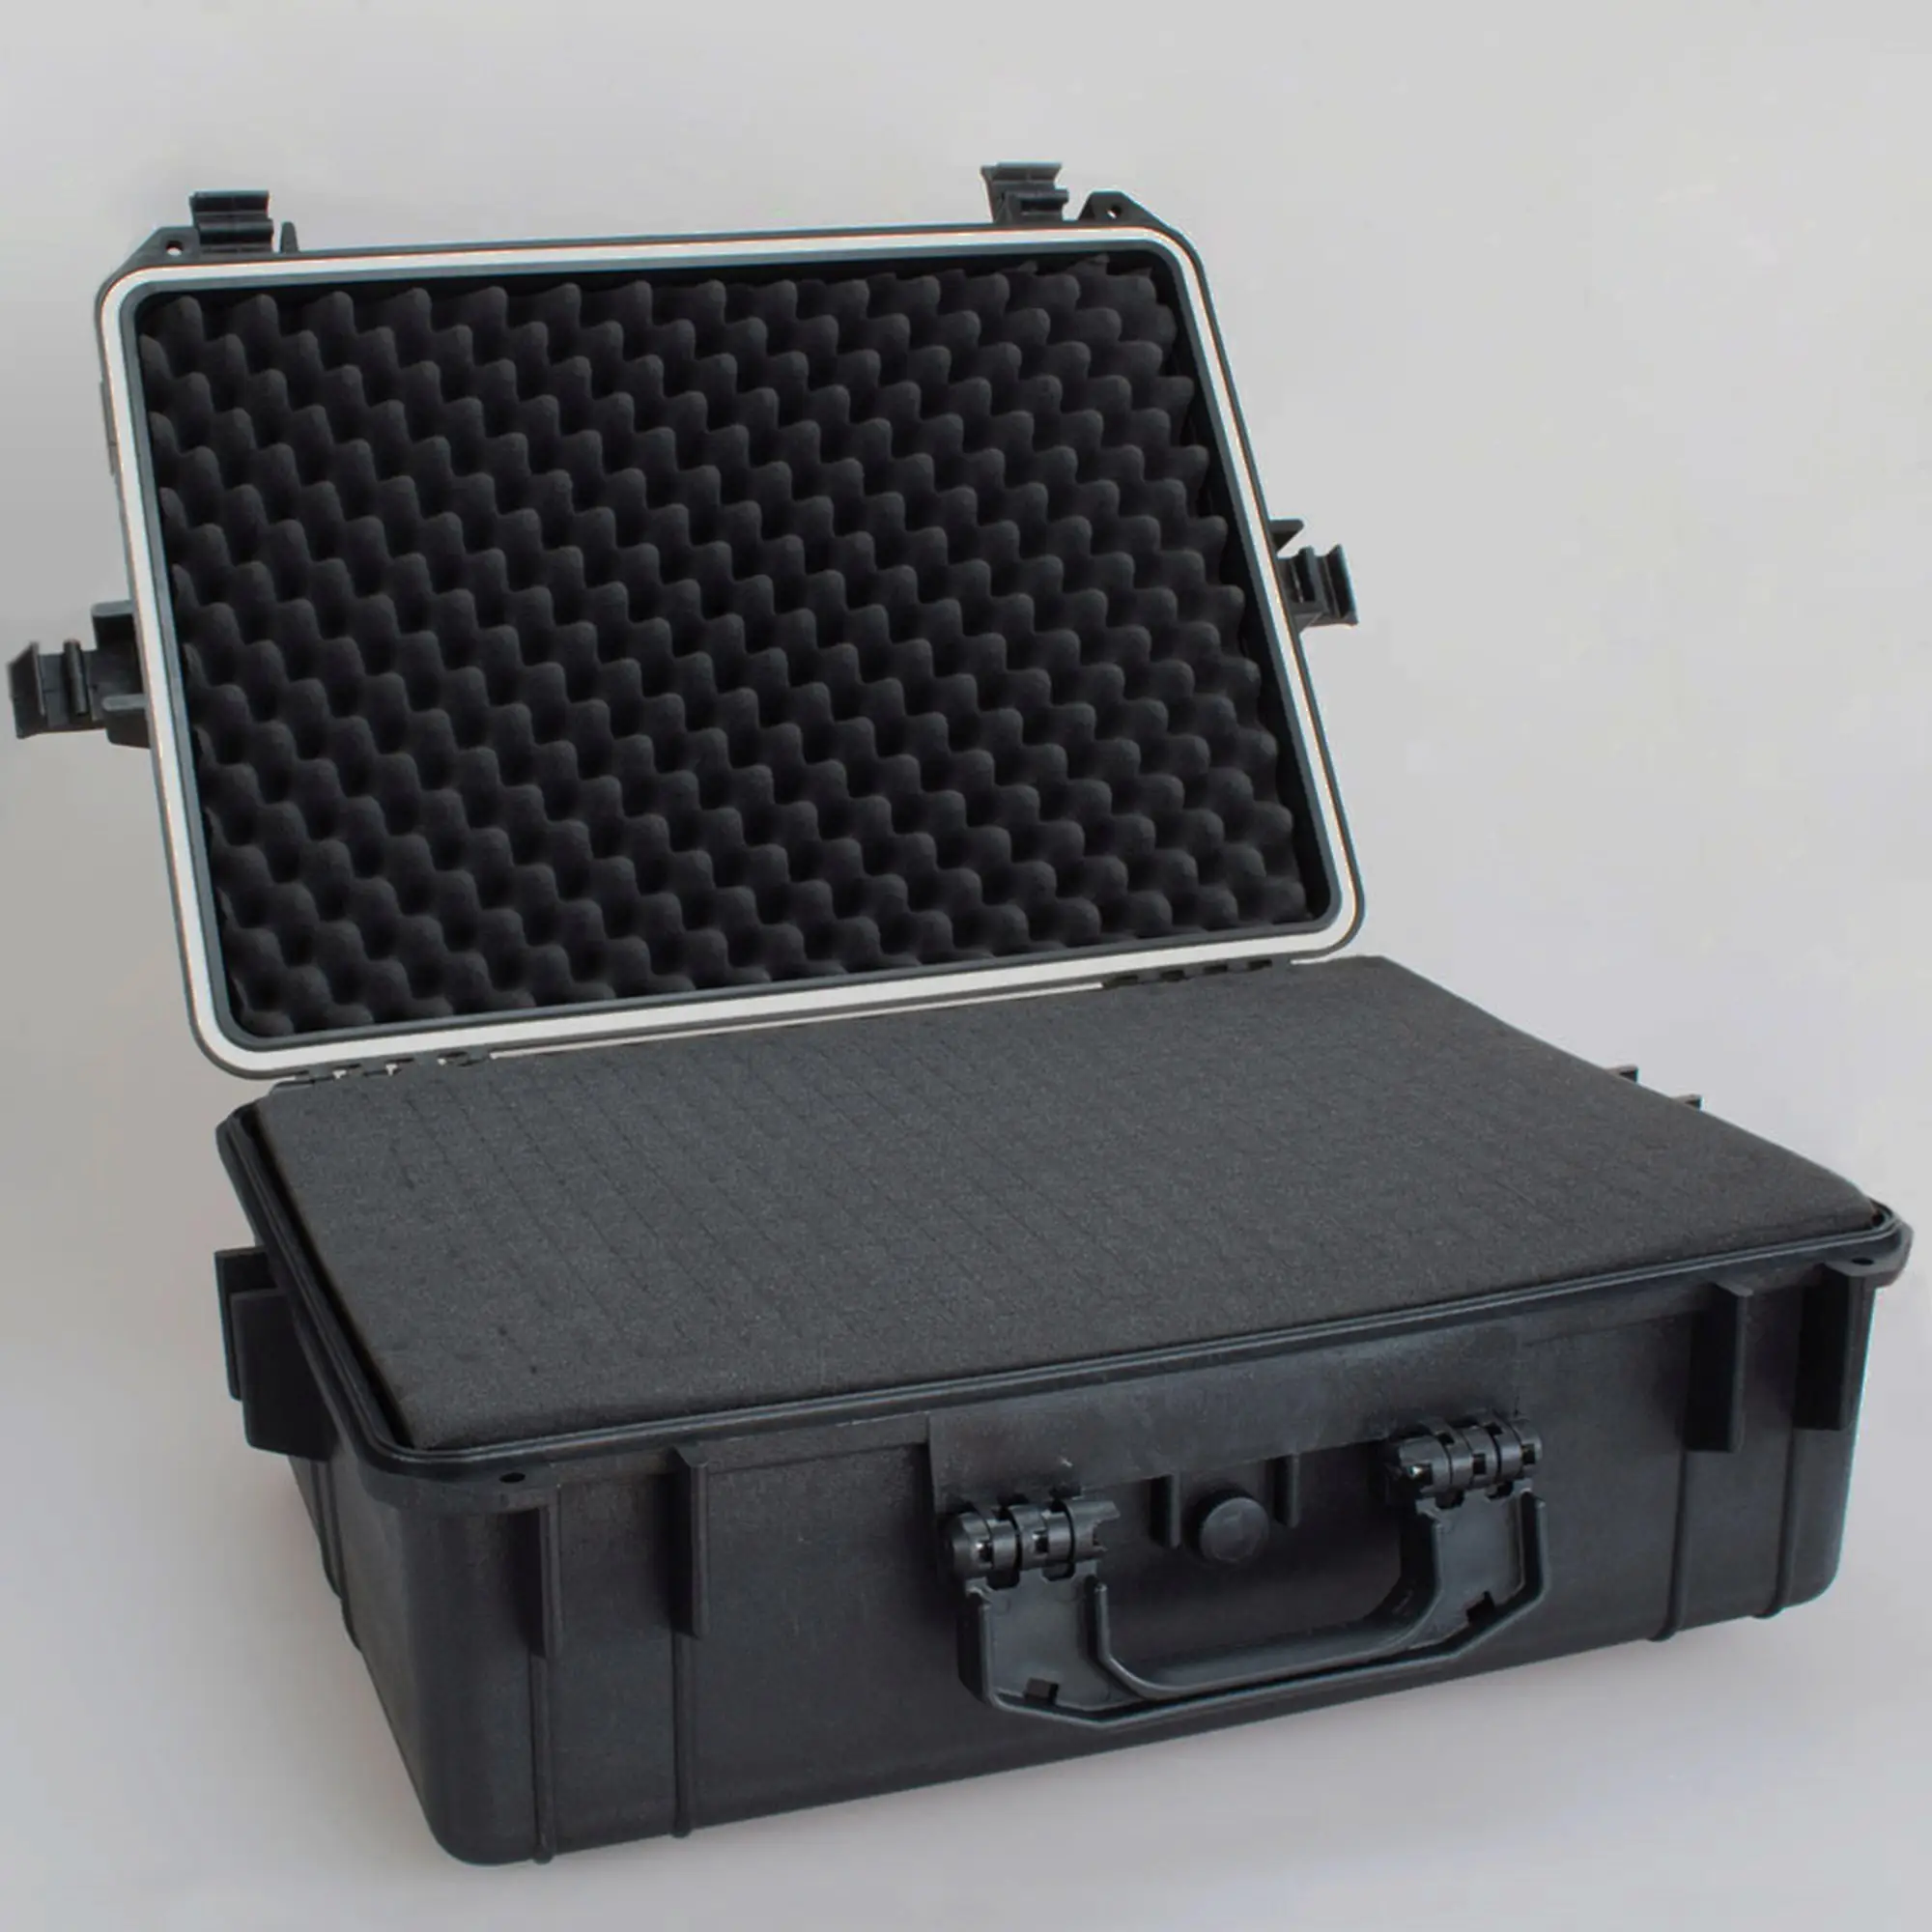 Taşınabilir plastik alet çantası su geçirmez sert plastik kasa koruyucu kamera için önceden kesilmiş köpük ile